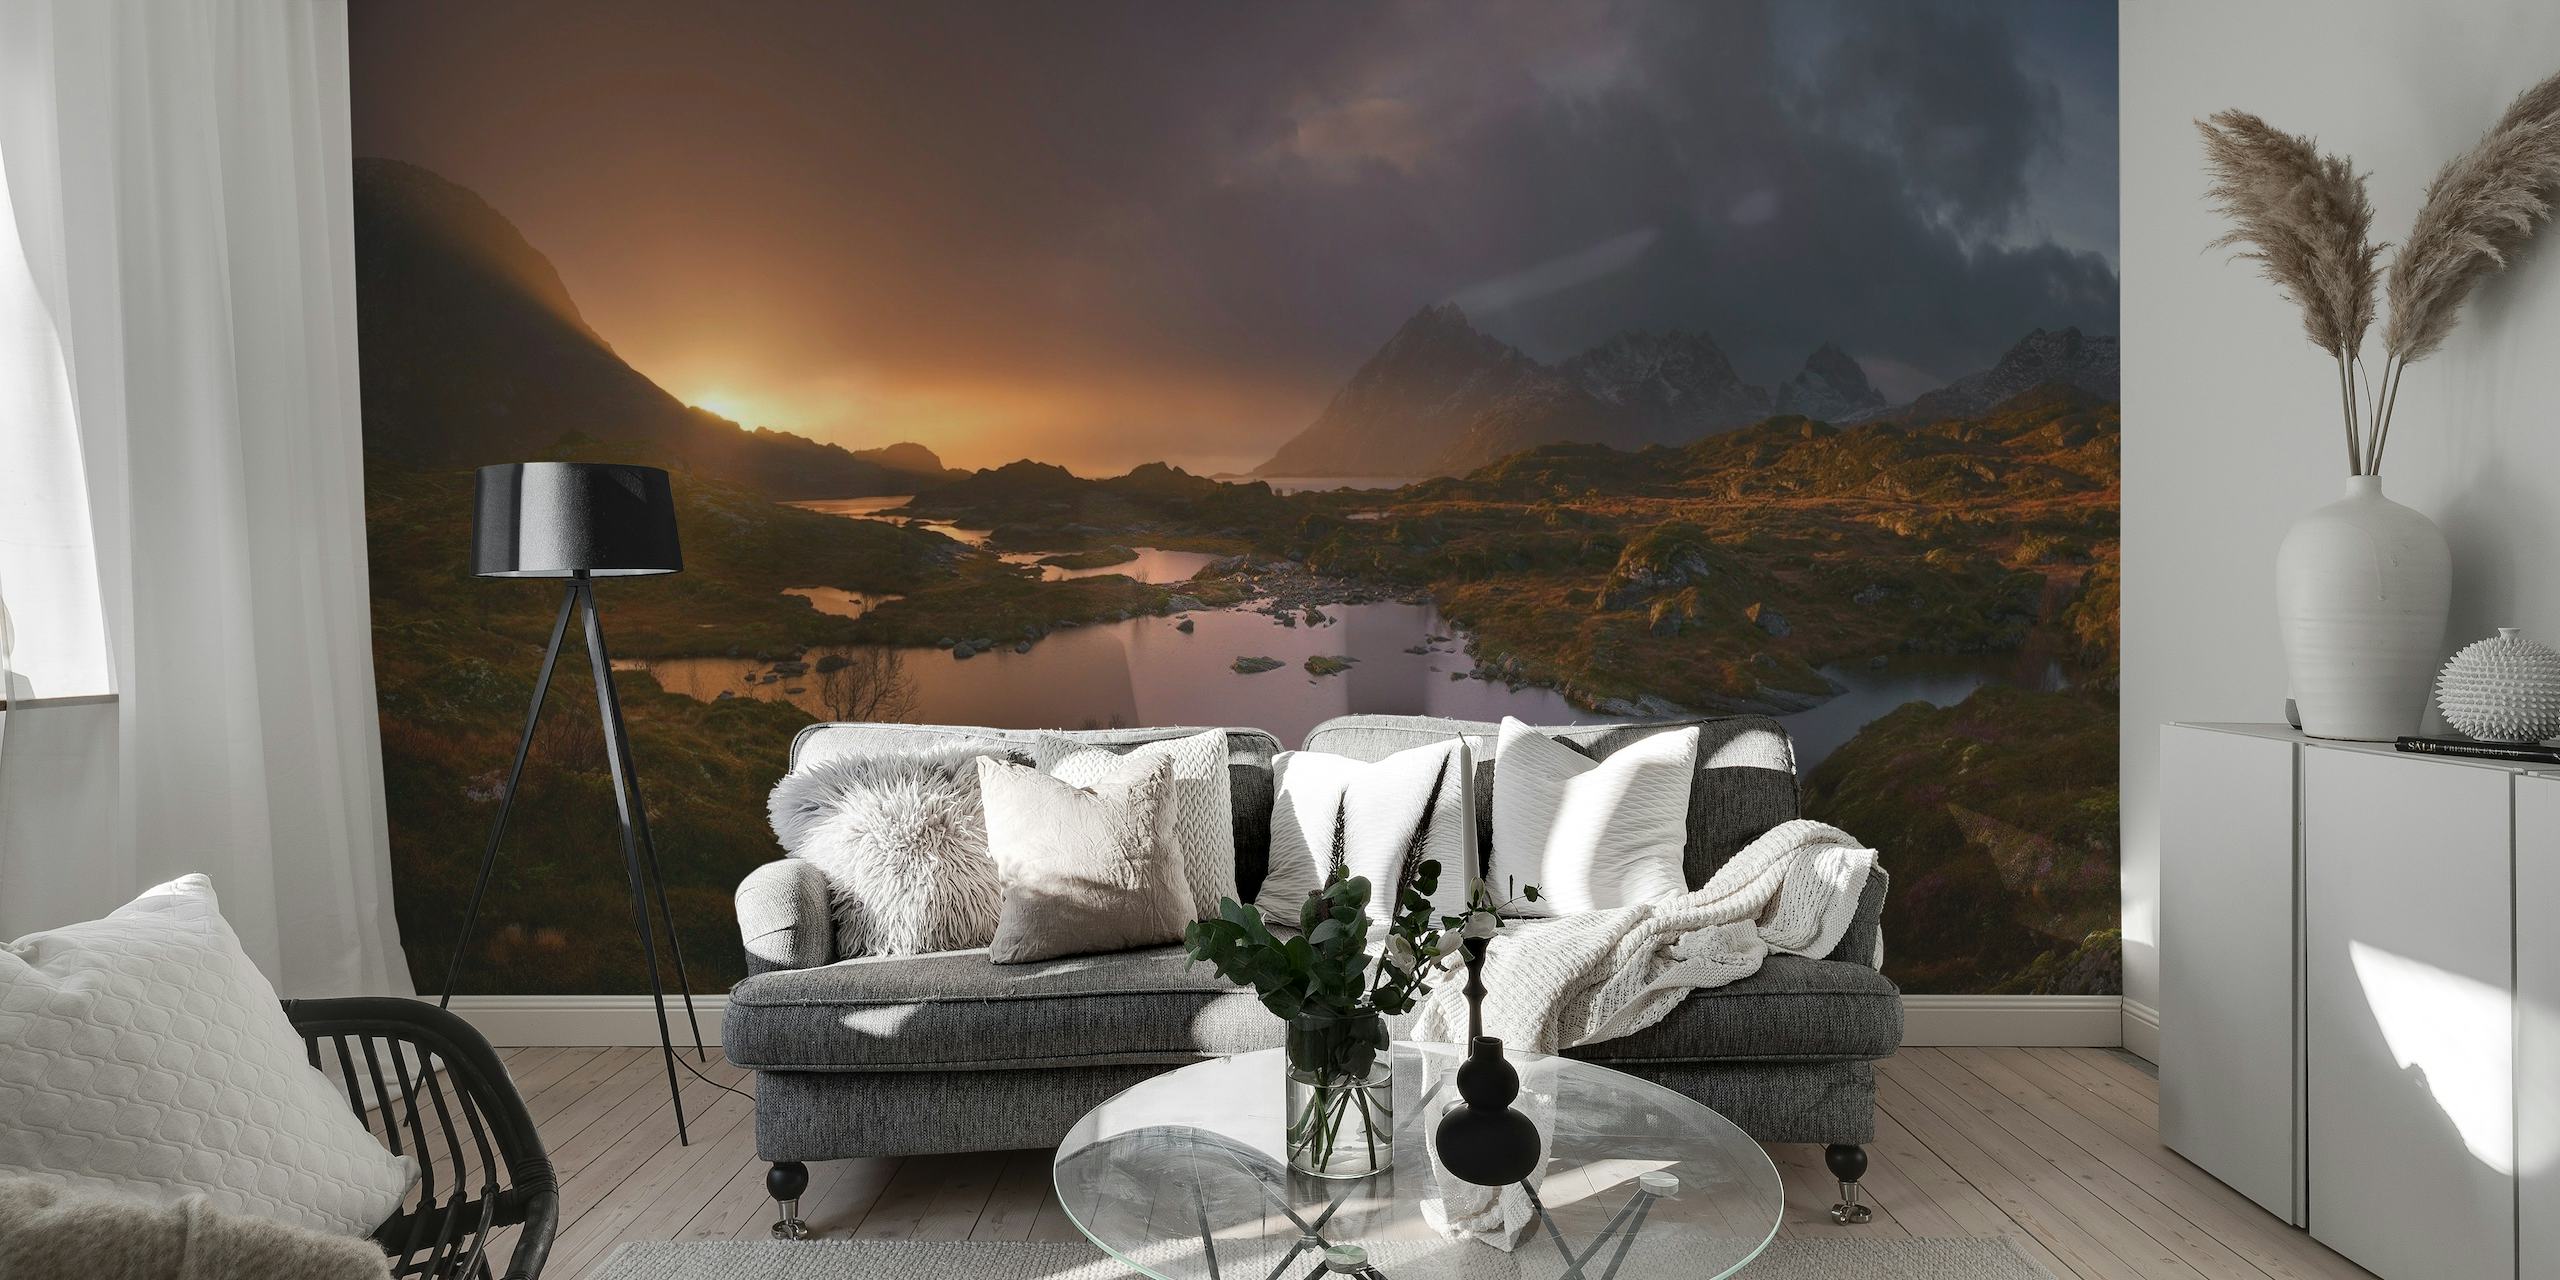 Nascer do sol sobre o mural de parede de Lofoten representando a luz tranquila do amanhecer na paisagem norueguesa com montanhas e lagos.